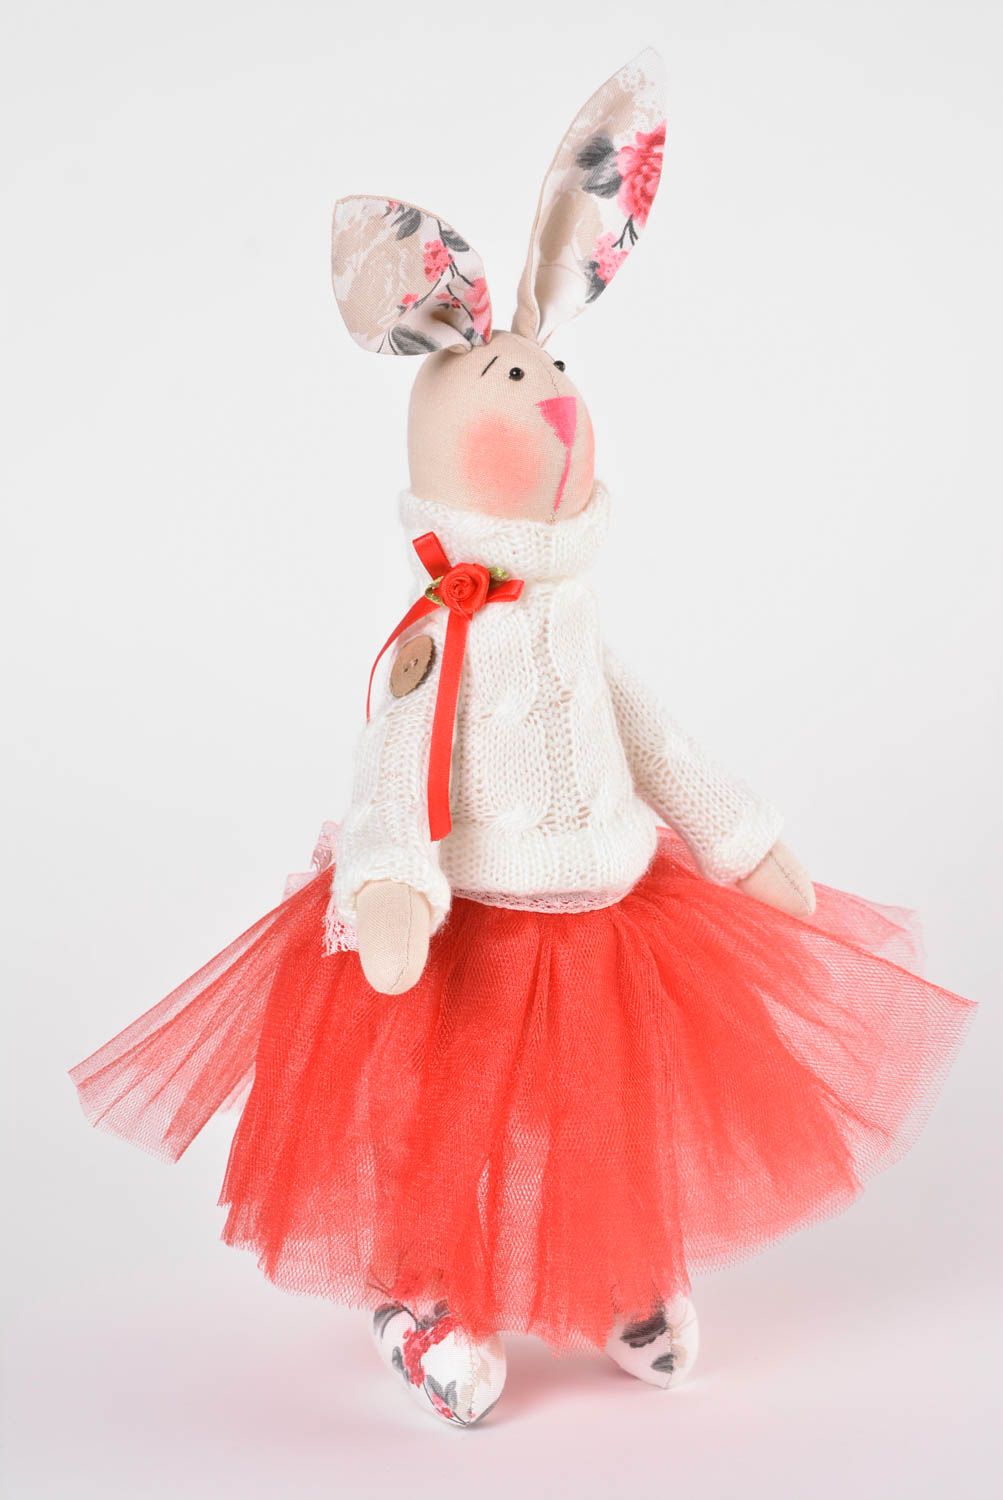 Игрушка заяц ручной работы авторская игрушка красивая стильный подарок из ткани фото 1